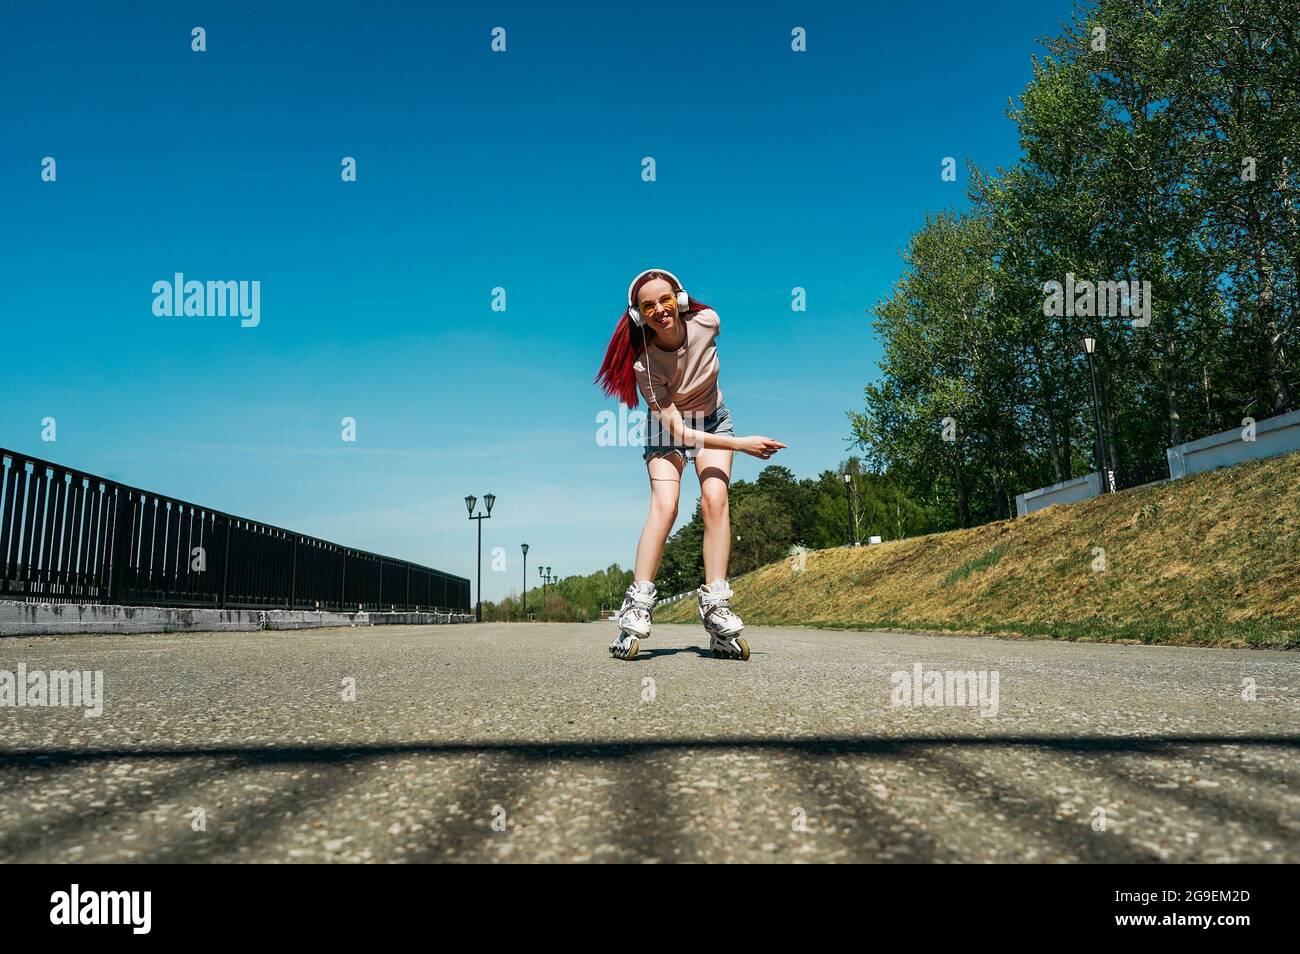 Une femme aux cheveux roses se déplace sur des patins à roulettes sur la route. Femme en lunettes de soleil jaunes et casque blanc. Banque D'Images